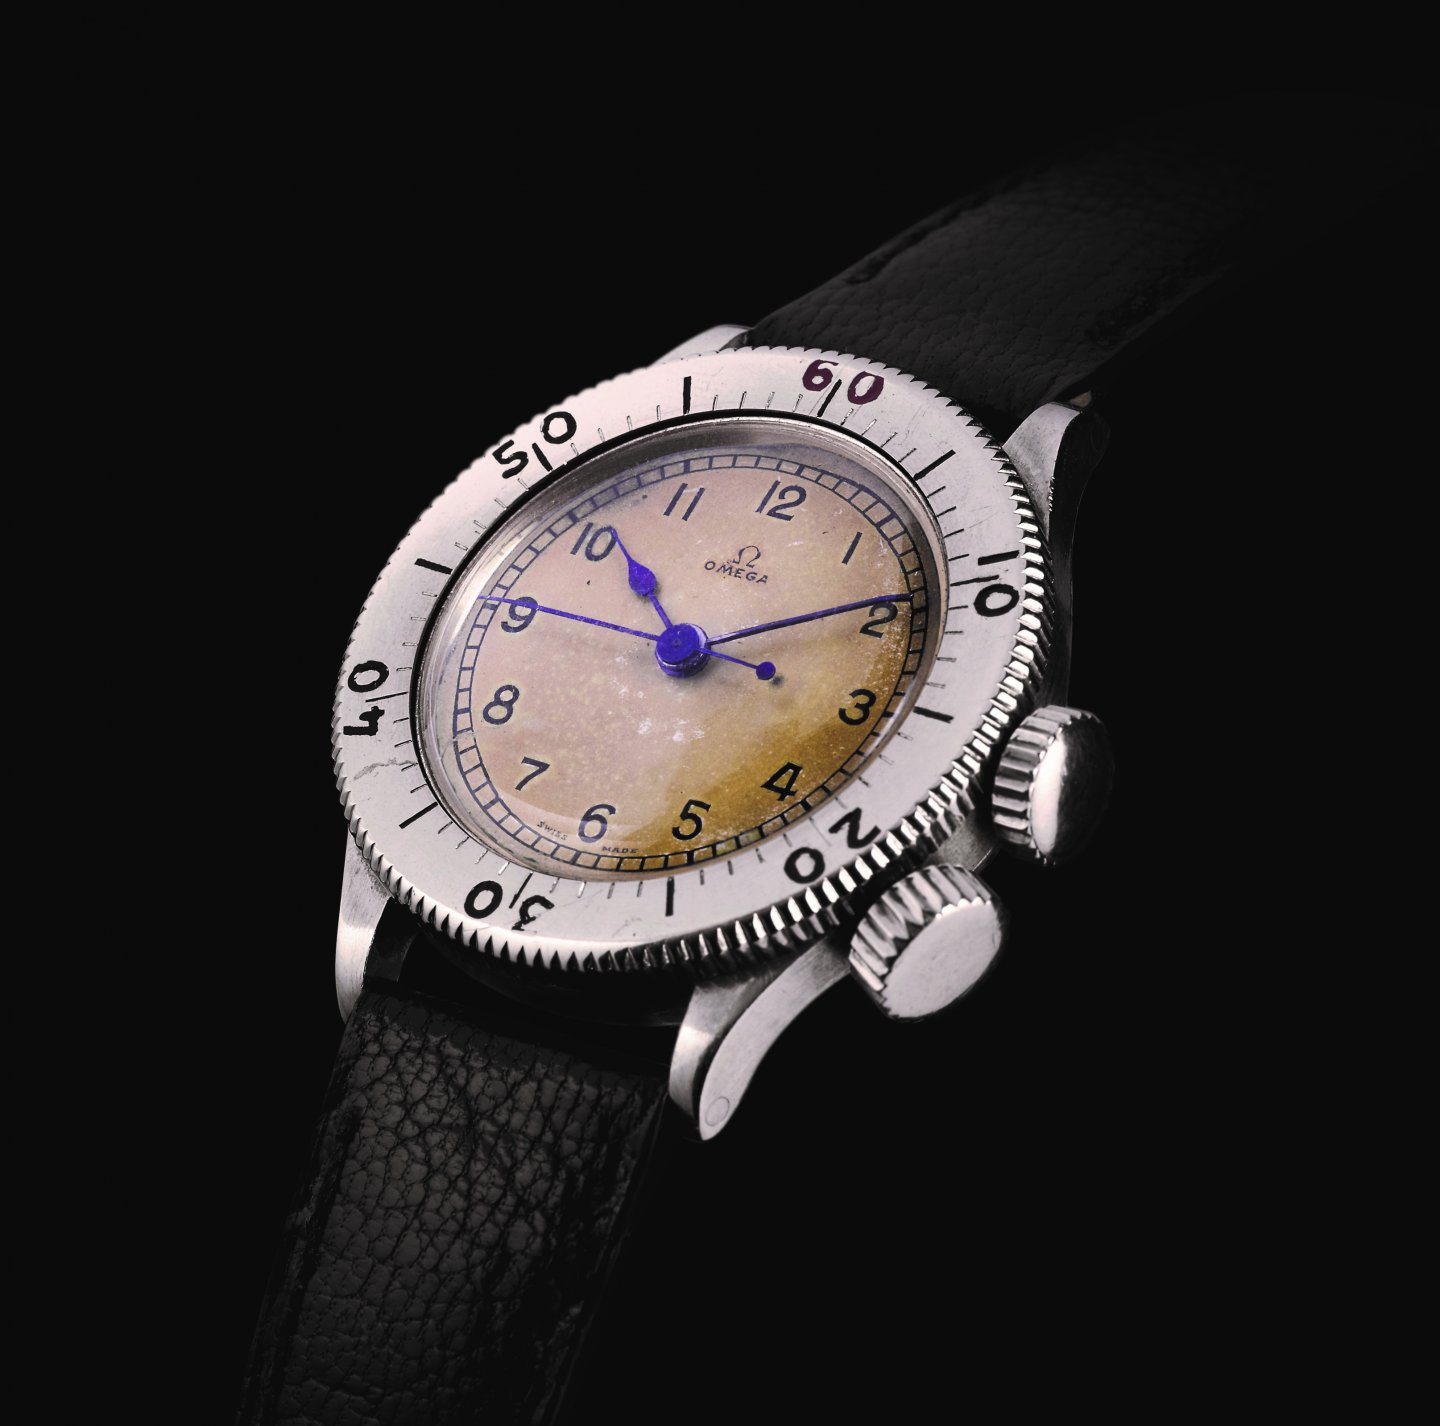 オメガ : 9月9日全国公開の映画『ダンケルク』 英国空軍 戦闘機パイロット役のトム･ハーディがオメガの時計を着用